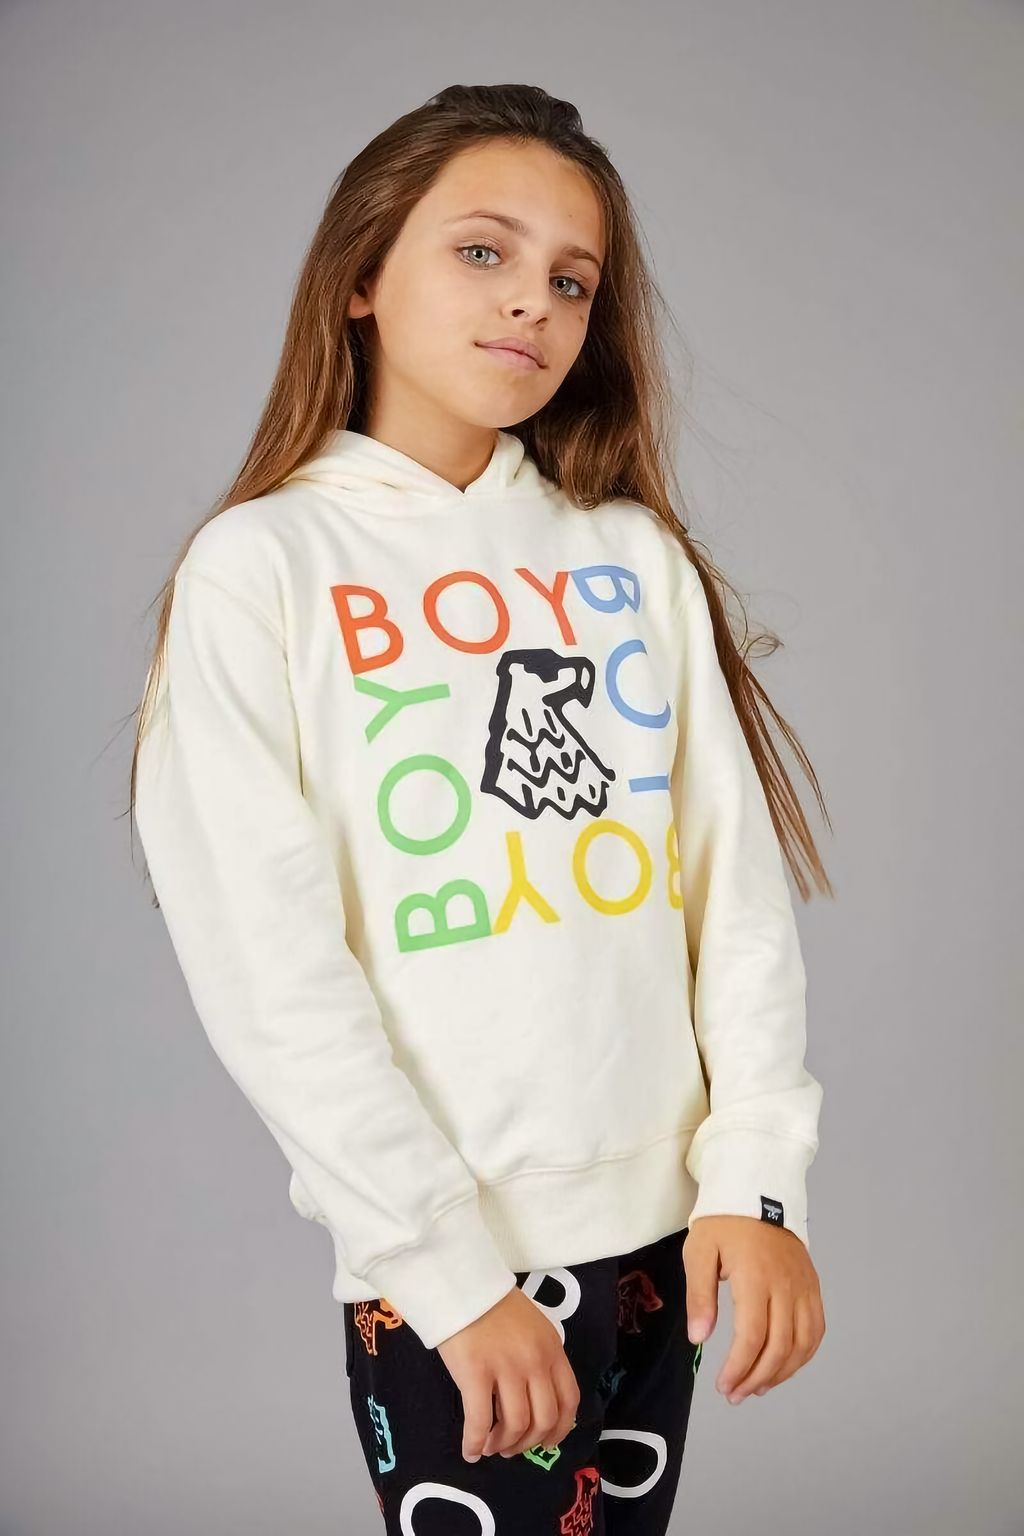 boy-london-kidswear-boy-quadruple-kids-hood-off-white-16974238253188_800x1200.jpg